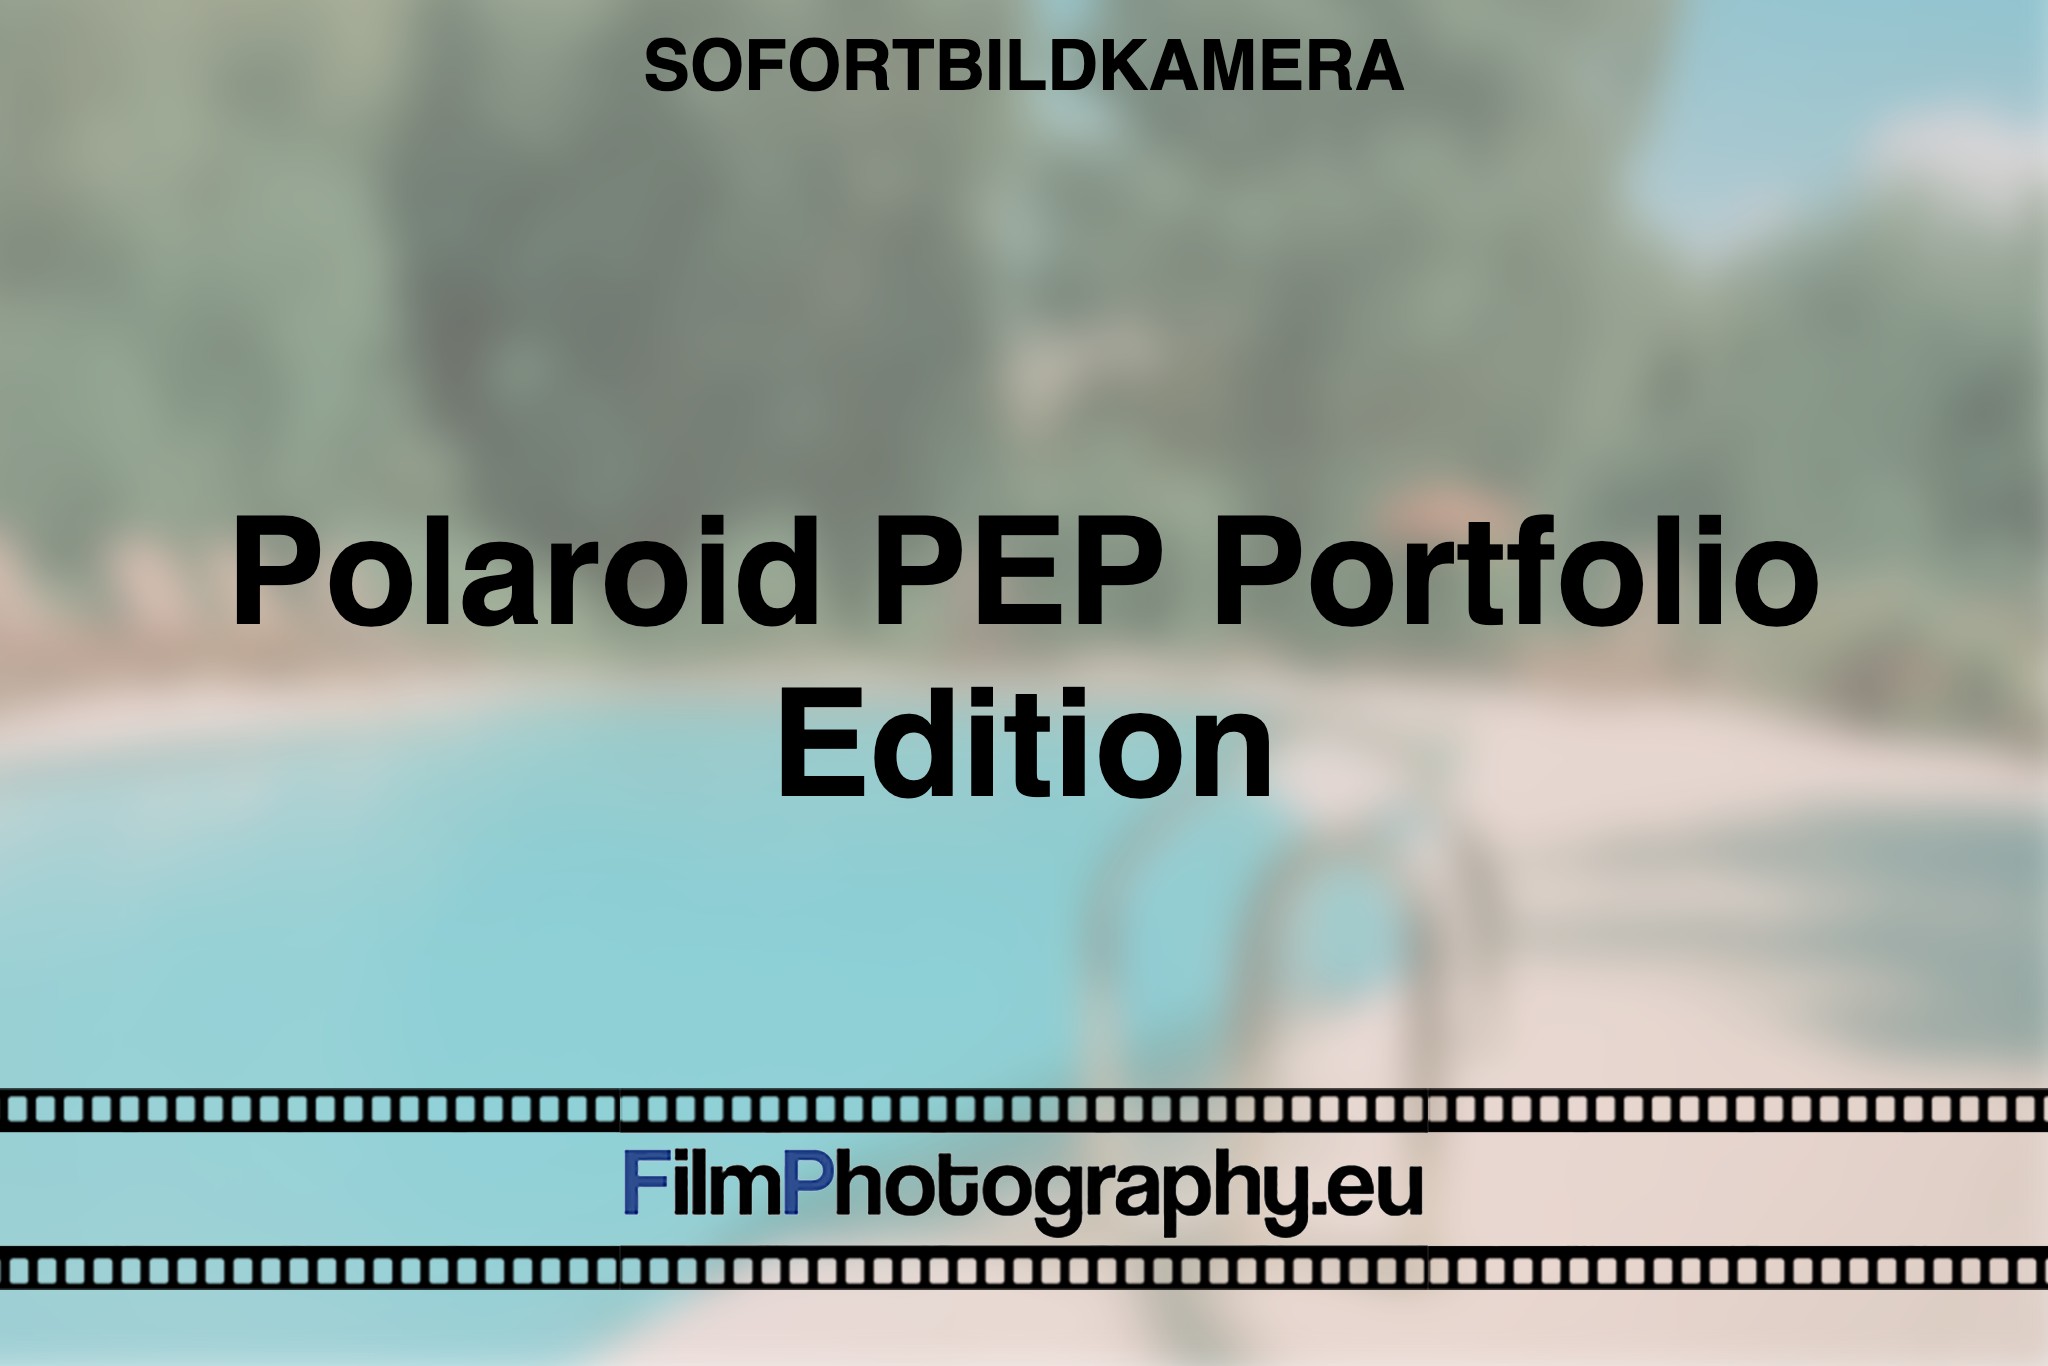 polaroid-pep-portfolio-edition-sofortbildkamera-bnv